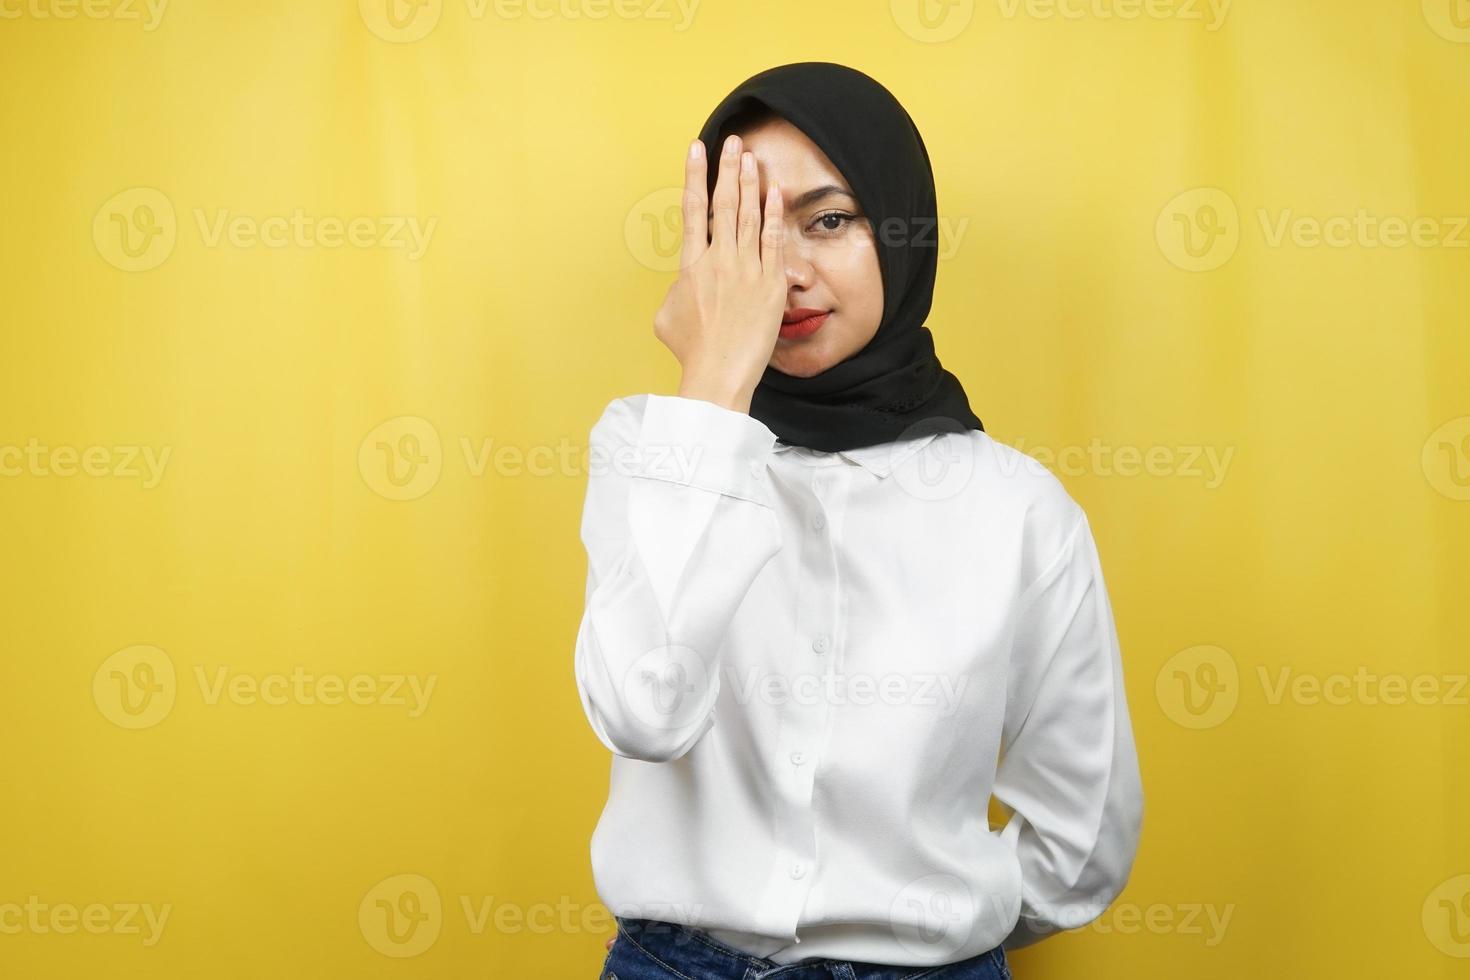 Hermosa joven musulmana asiática con la mano cubriendo un ojo mirando a la cámara aislada sobre fondo amarillo foto